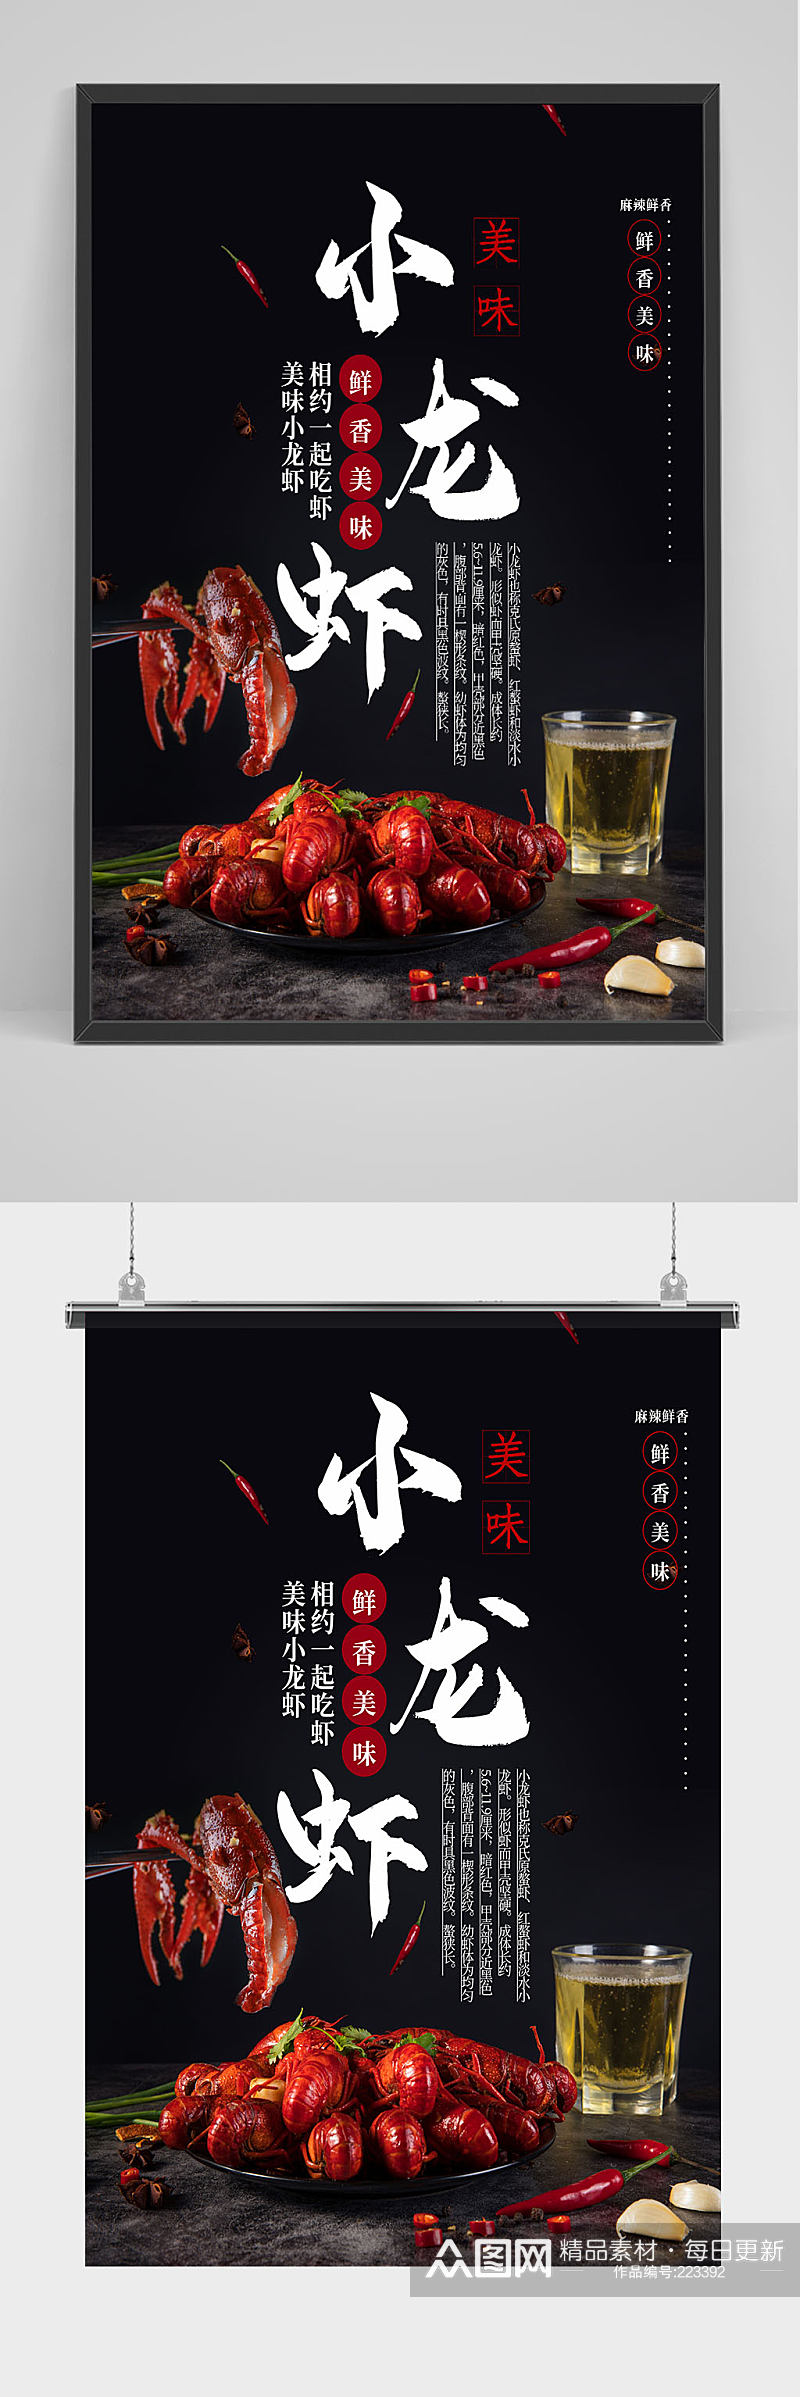 美食小龙虾宣传促销海报素材